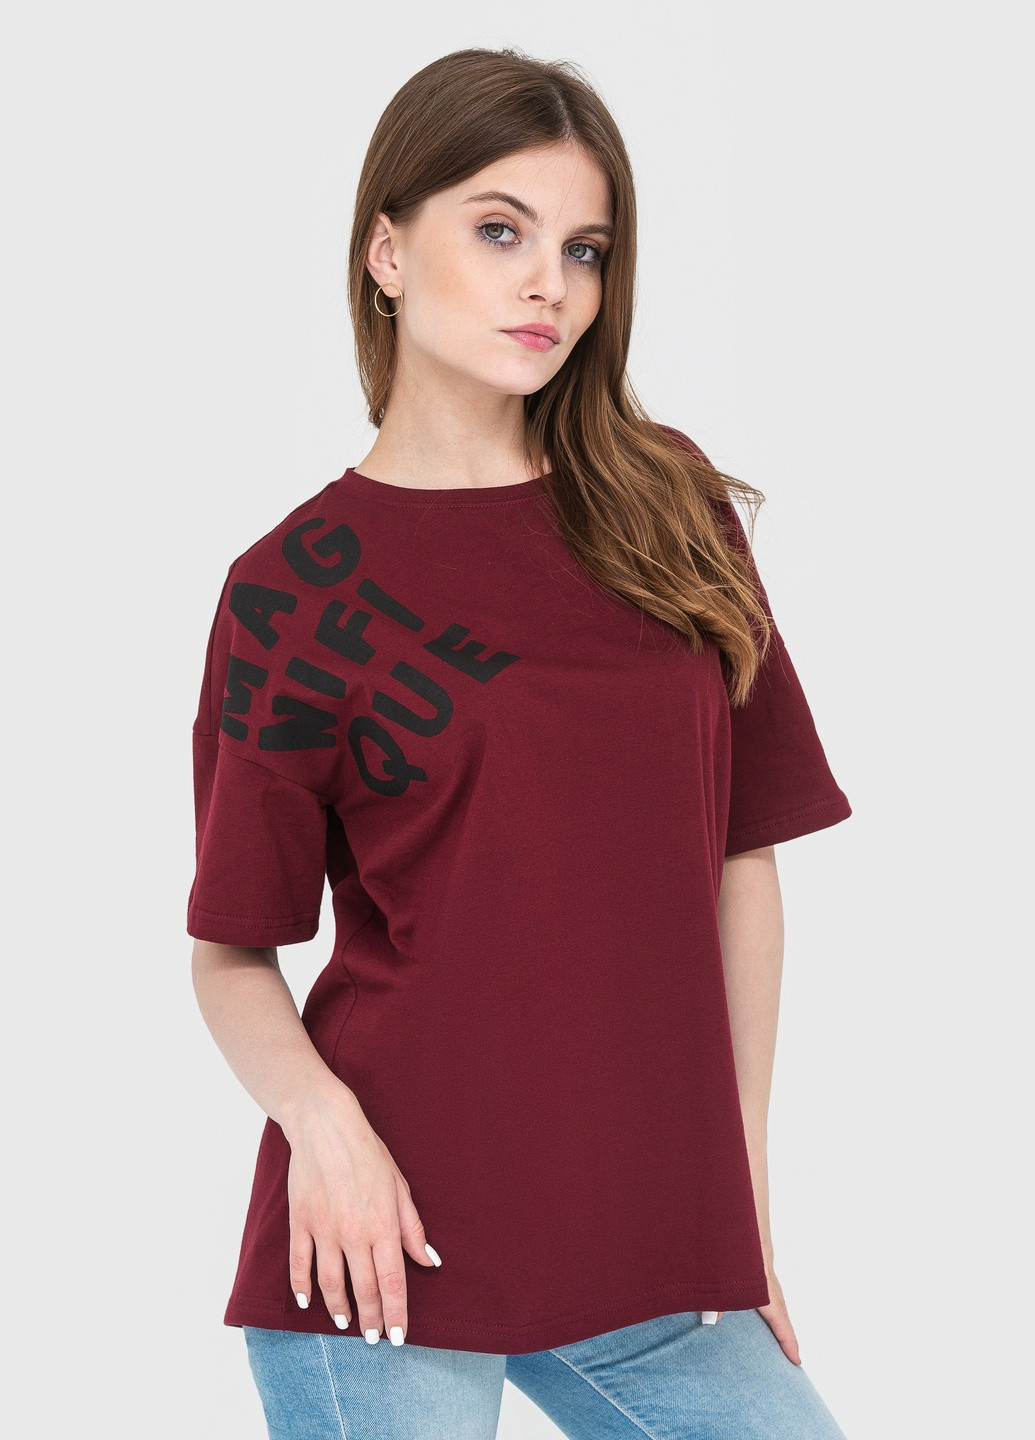 Бордовая летняя футболка женская с коротким рукавом Роза